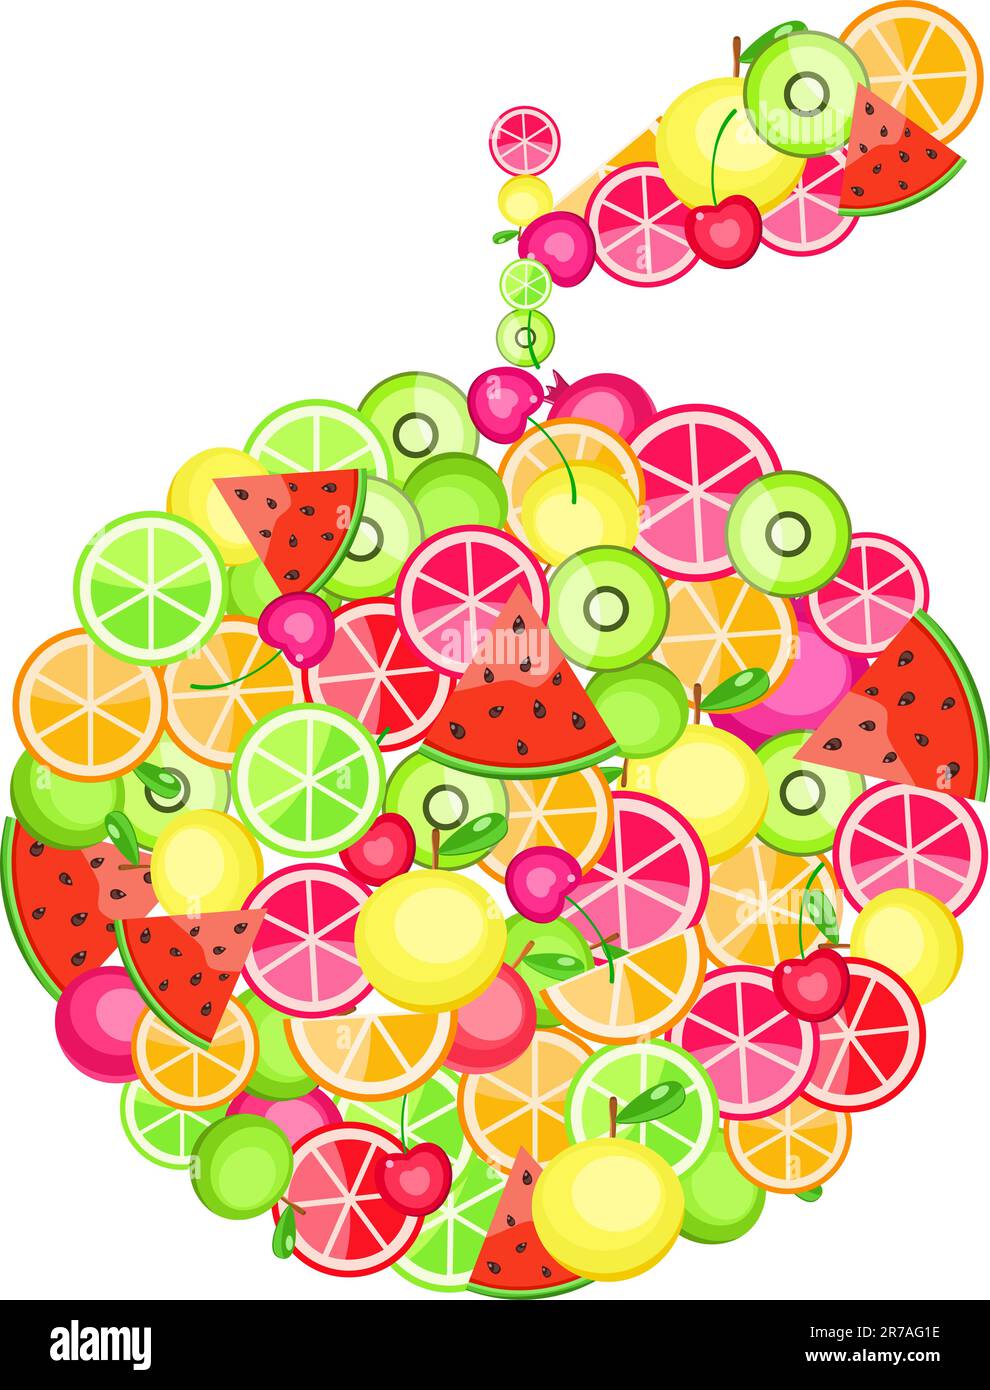 apfelsilhouette aus verschiedenen Früchten - Granatapfelorange, Apfelkirsche, Wassermelone auf weißem Hintergrund Stock Vektor